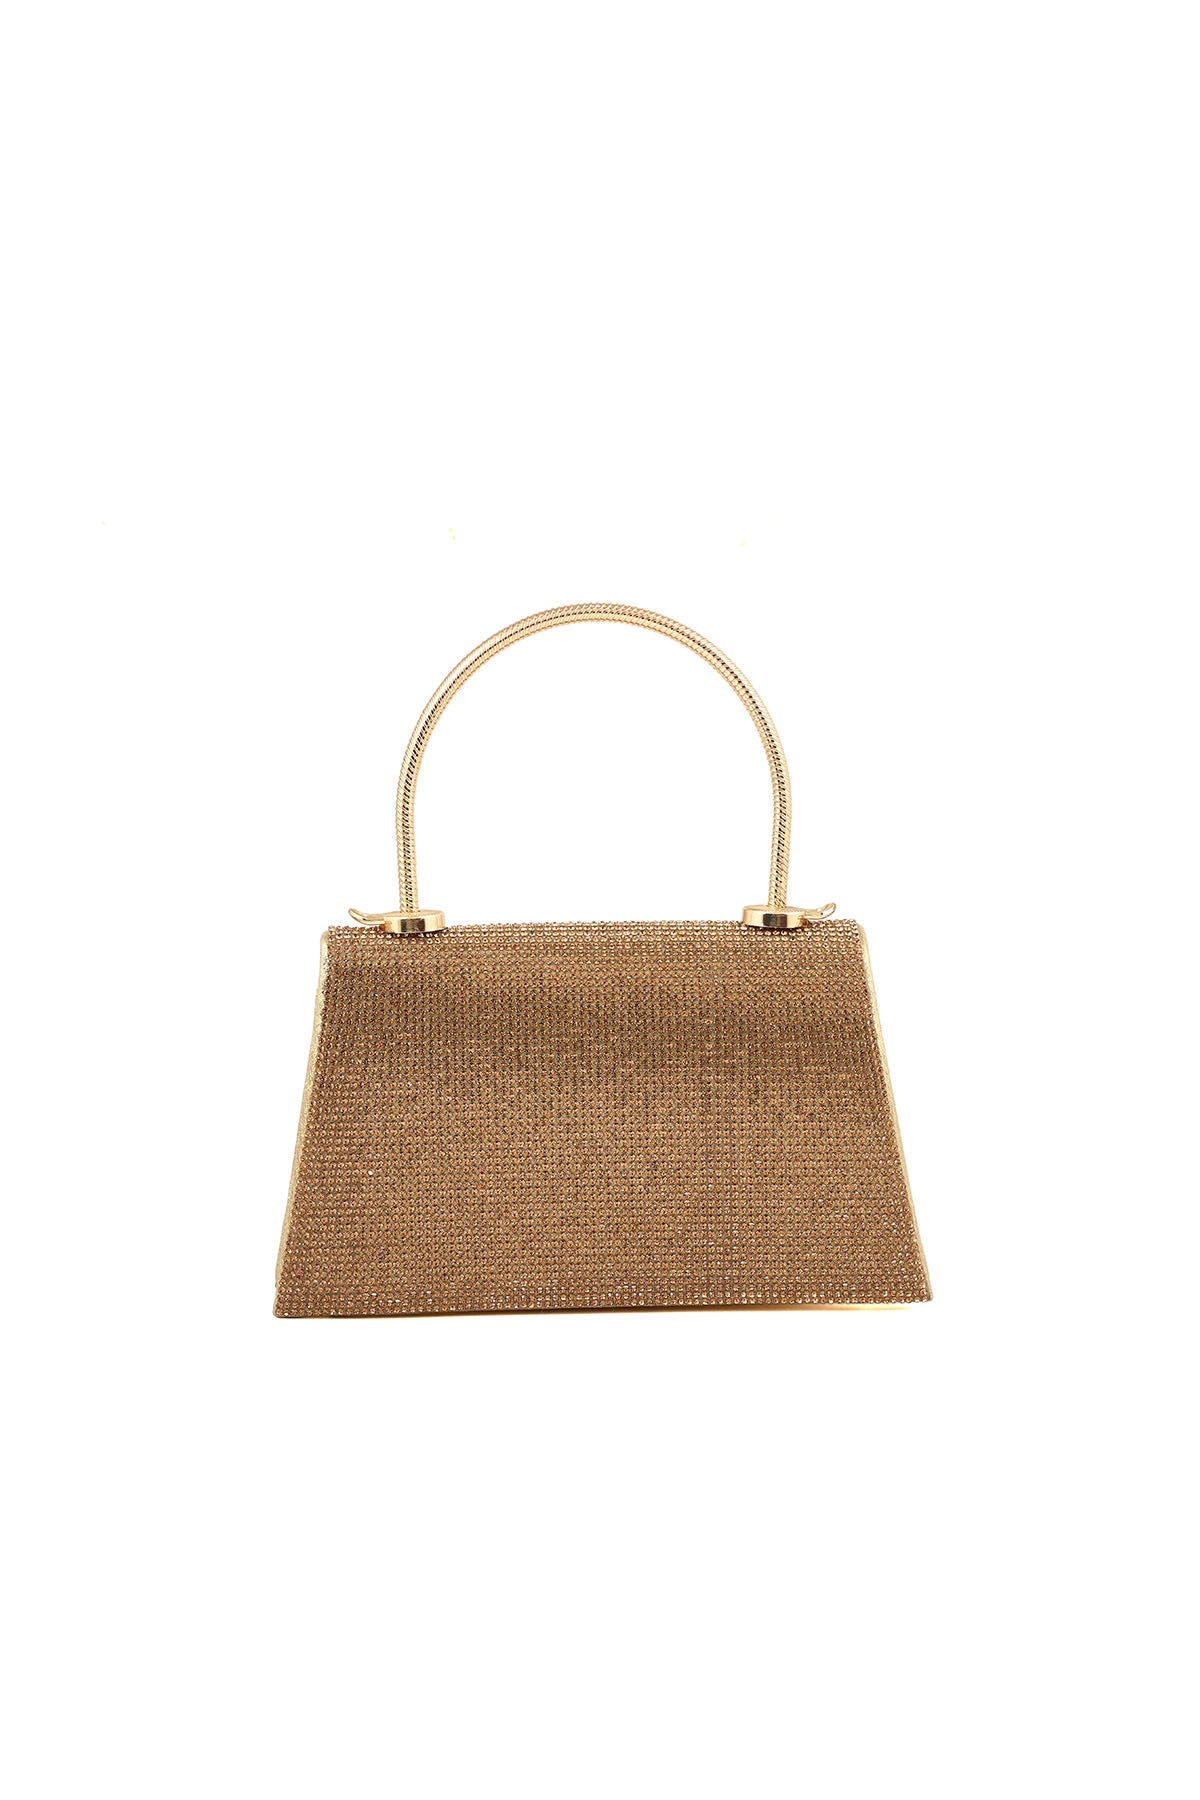 Top Handle Hand Bags B21603-Golden